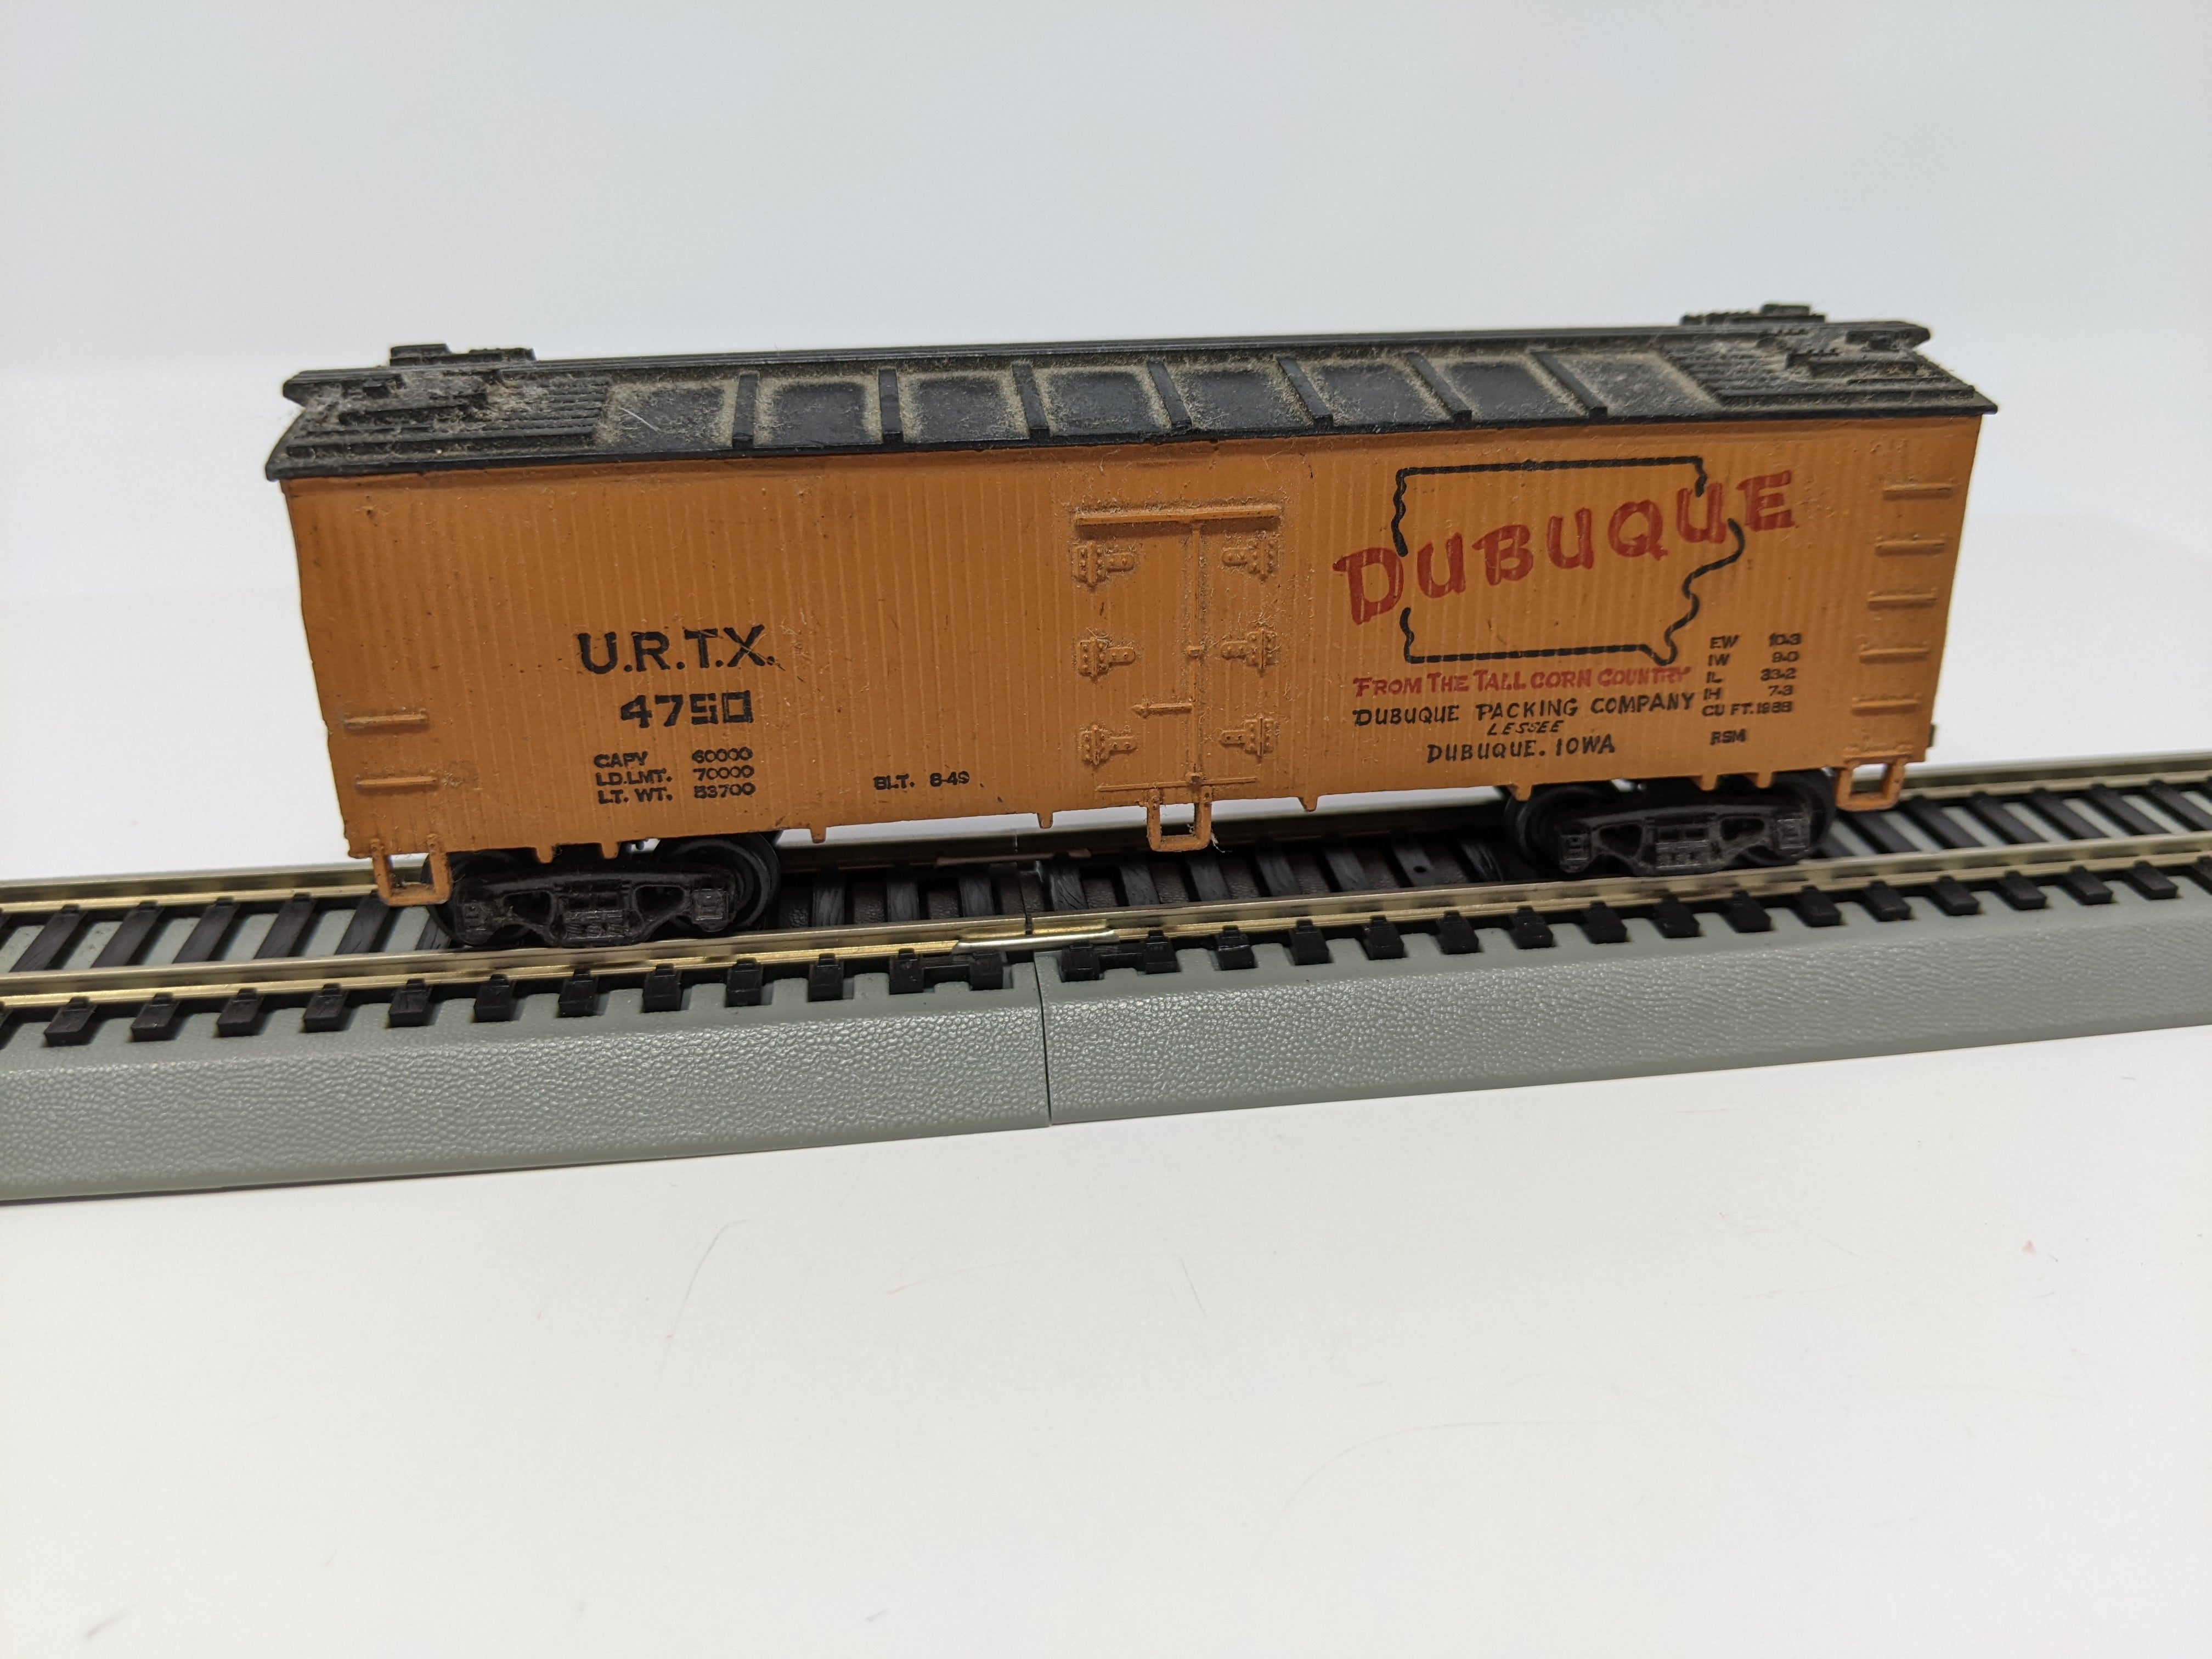 USED HO Scale, Dusbuque Wooden Box CarURTX #4750, Read Description